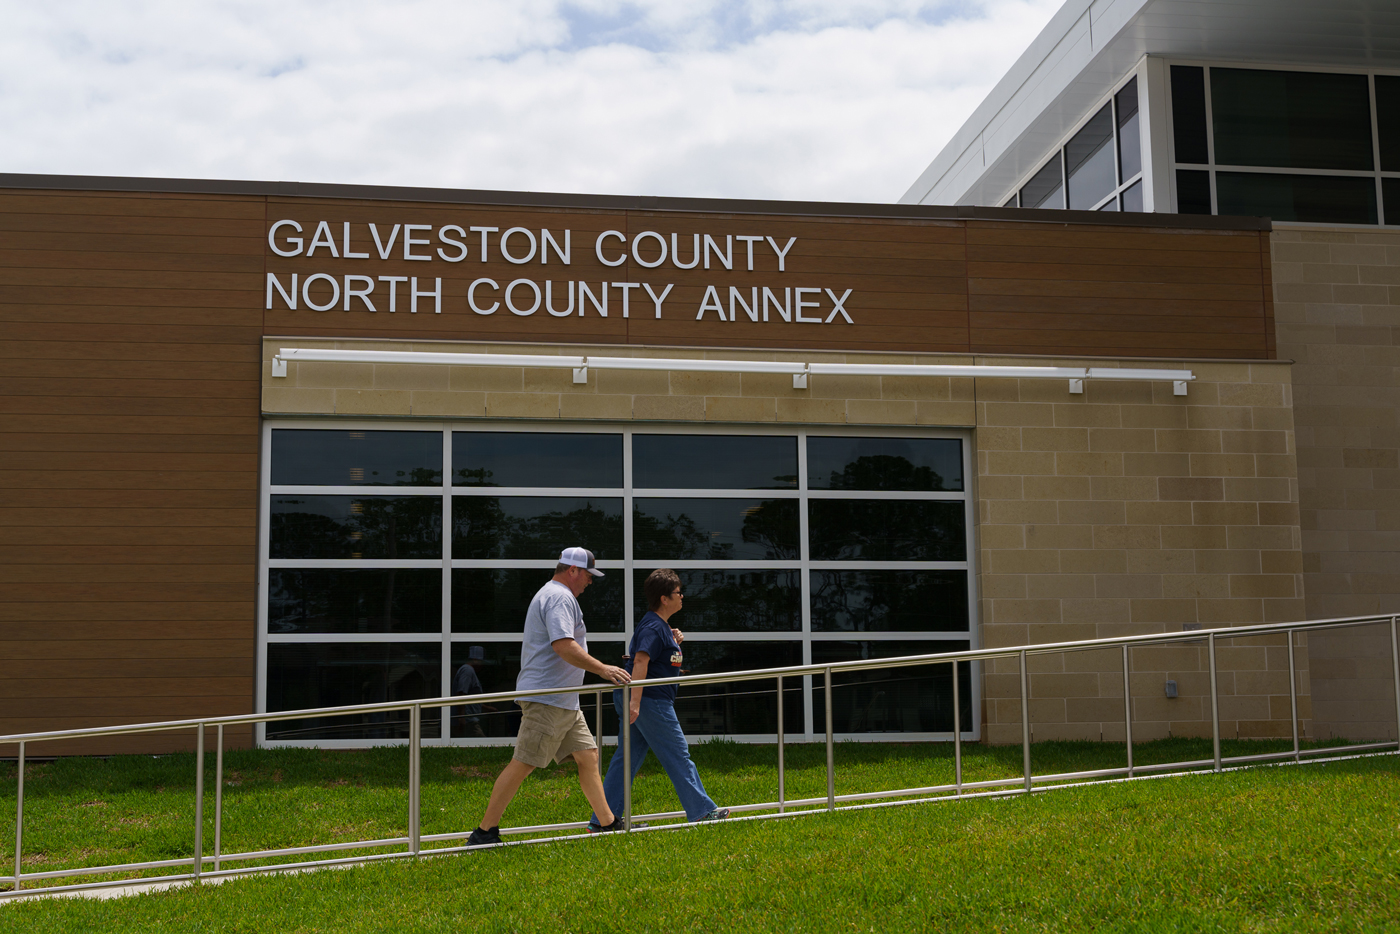 Galveston County North County Annex